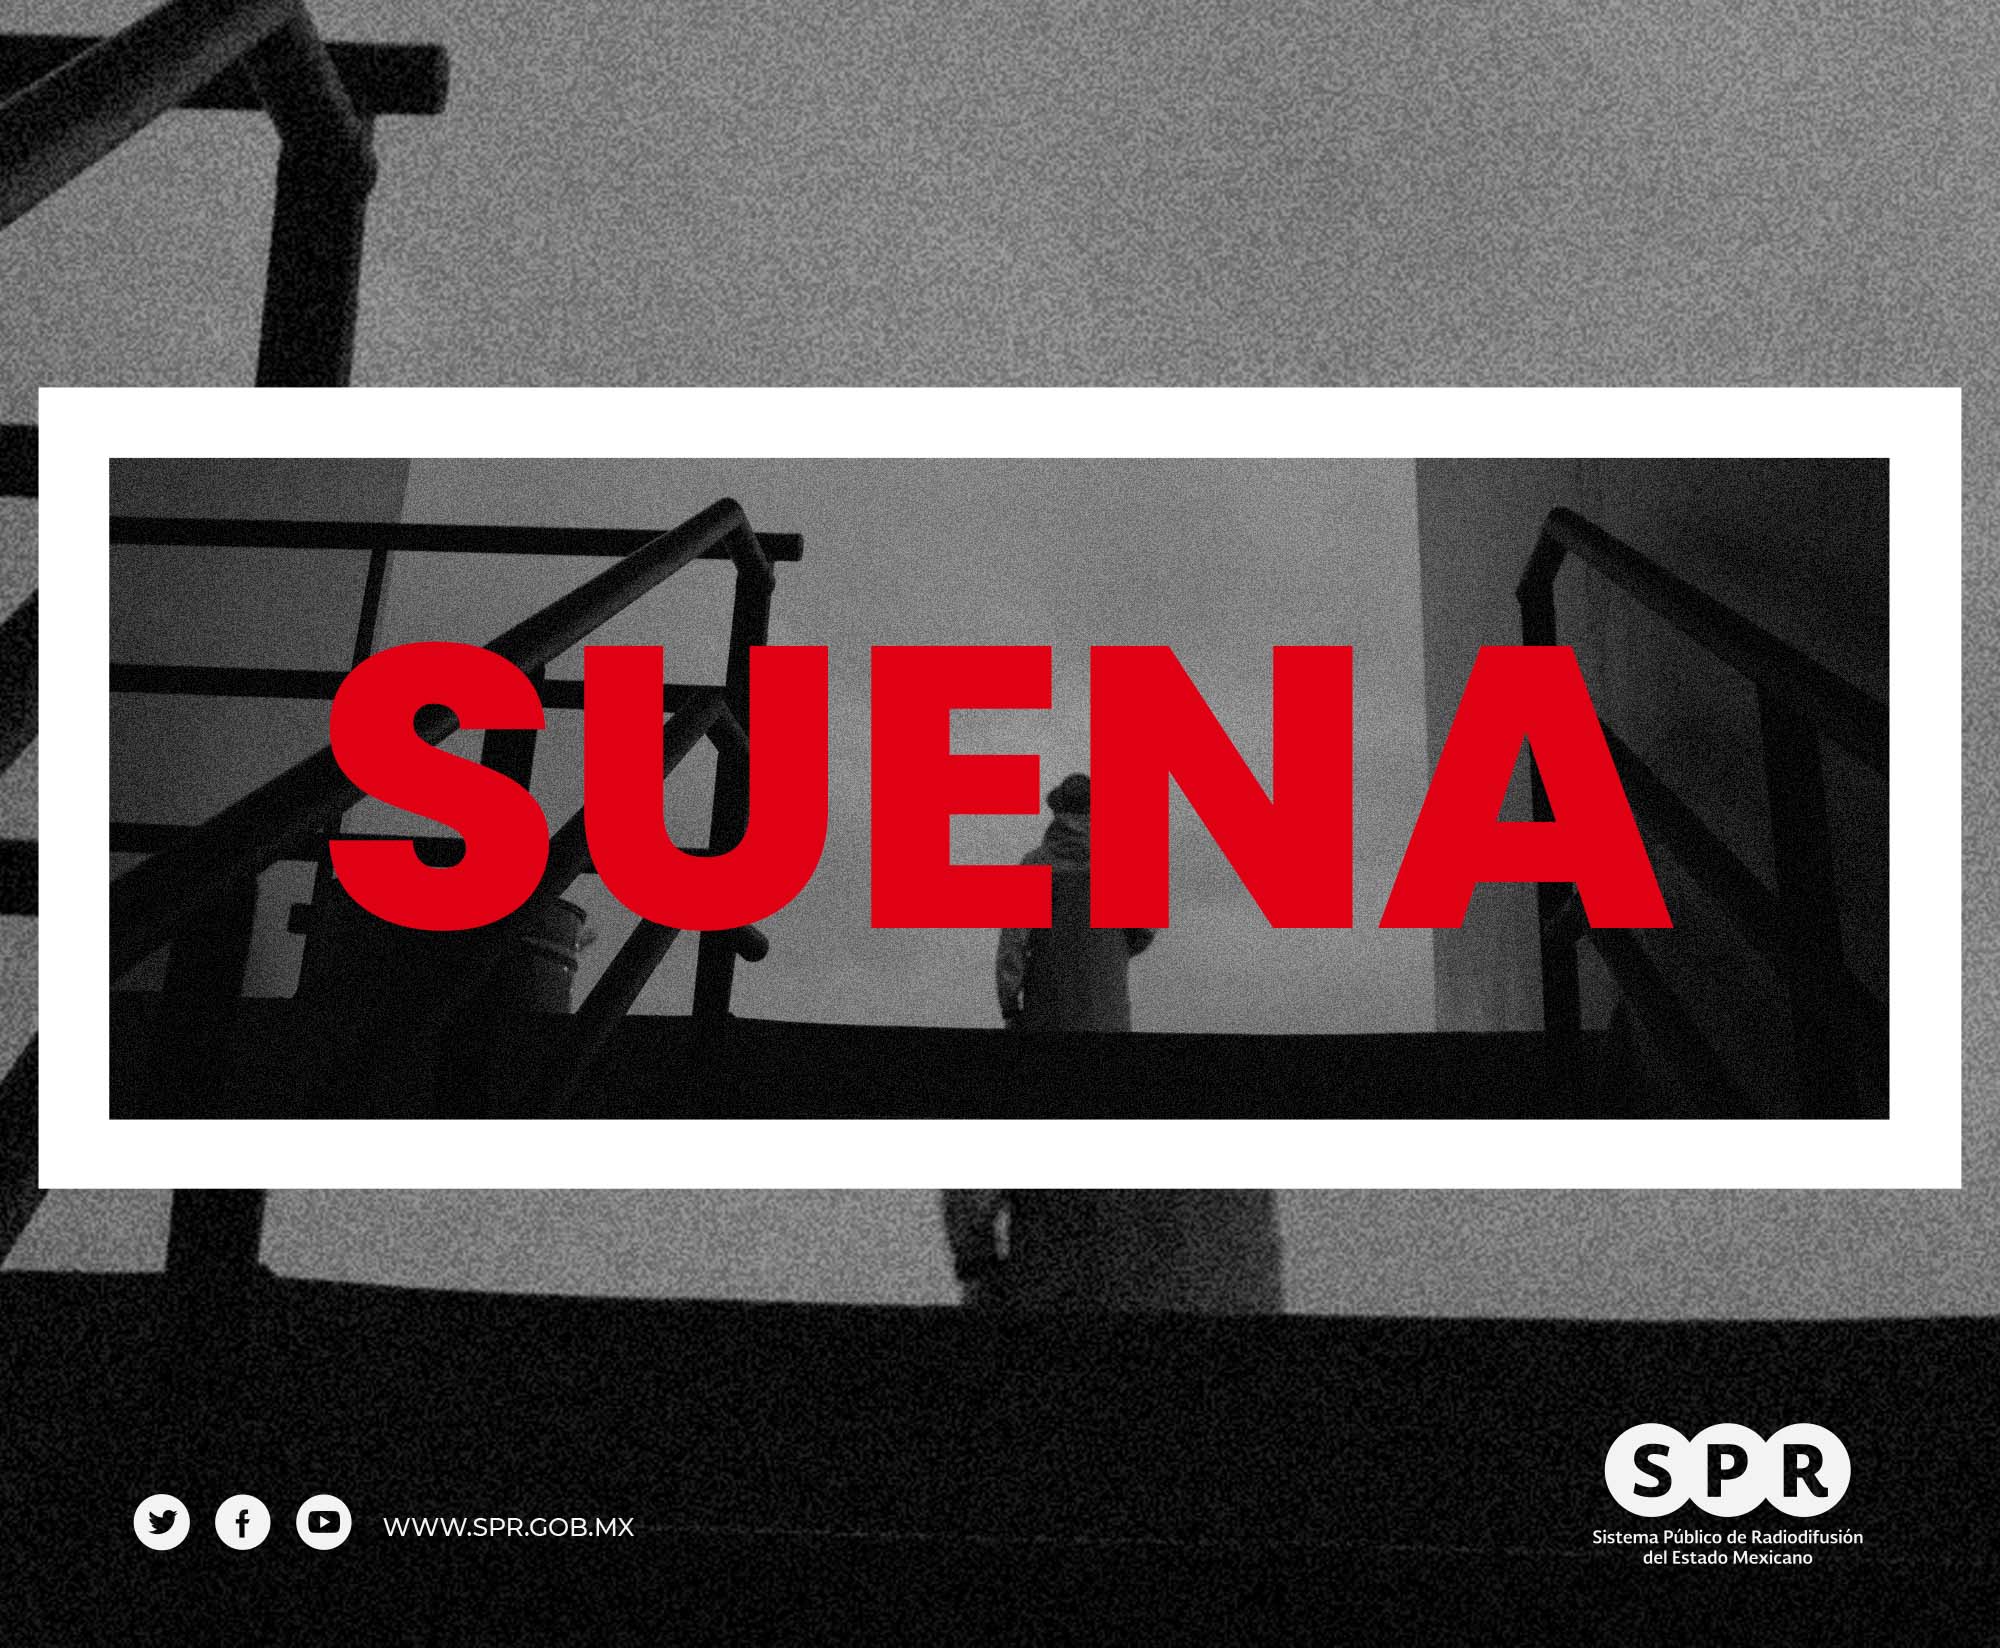 <i>Canal Catorce</i> del SPR estrena el viernes 31 de marzo la serie <b>“Suena”</b>